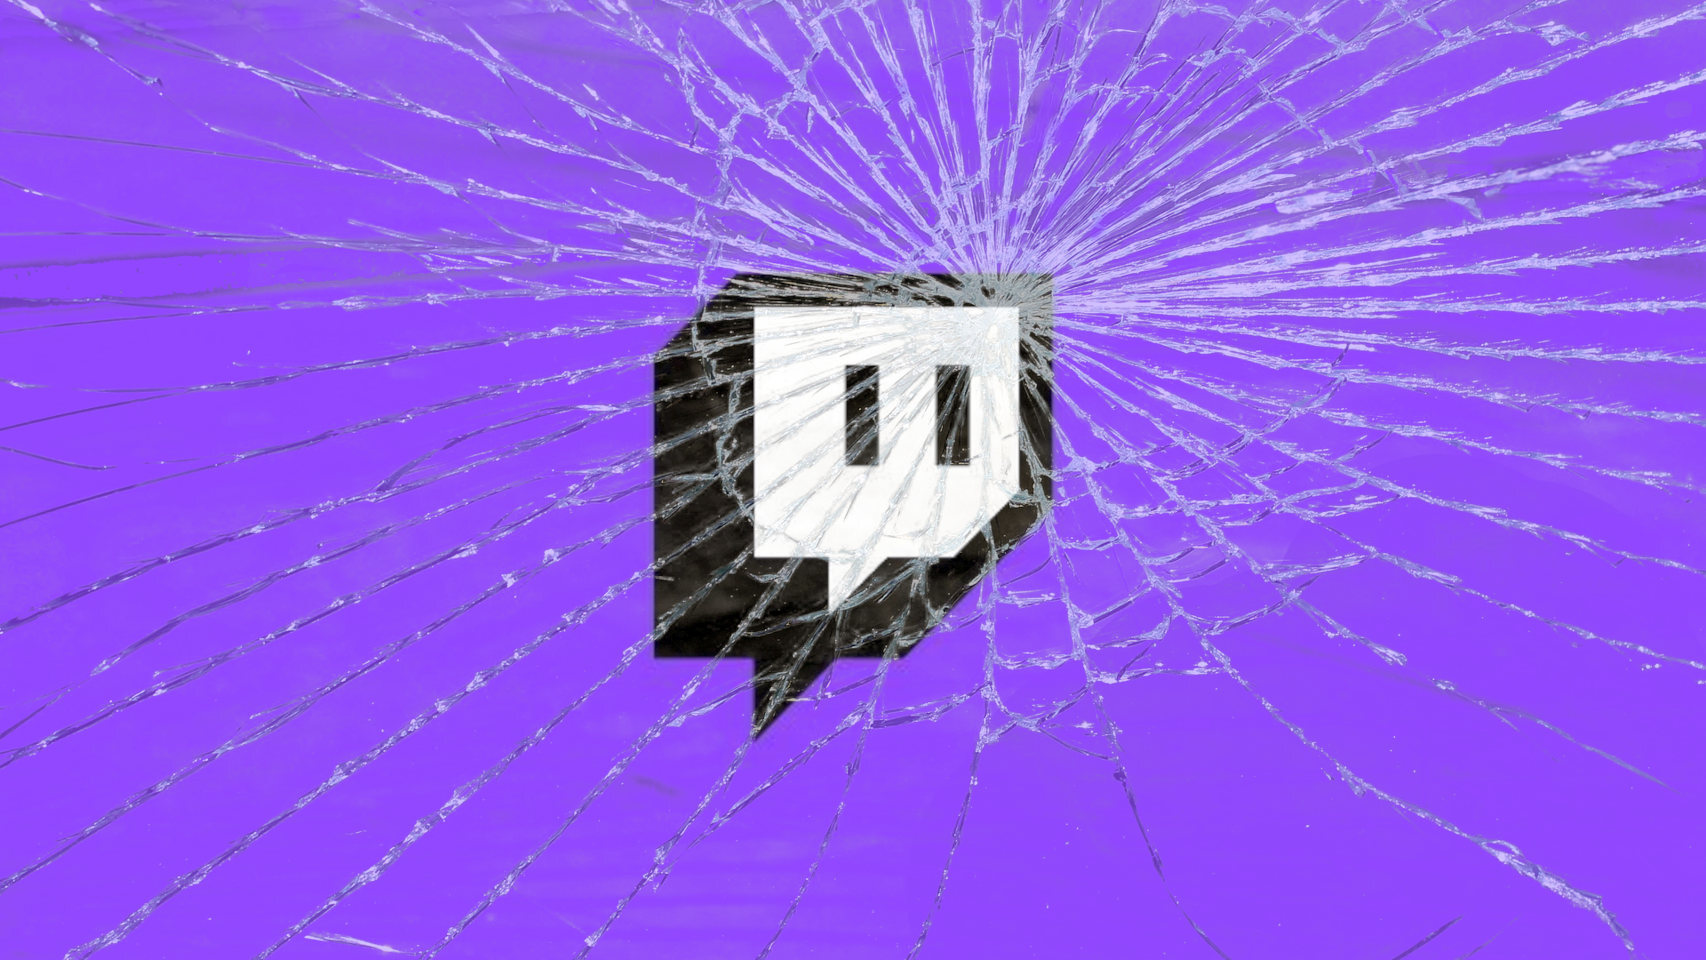 Logo de Twitch